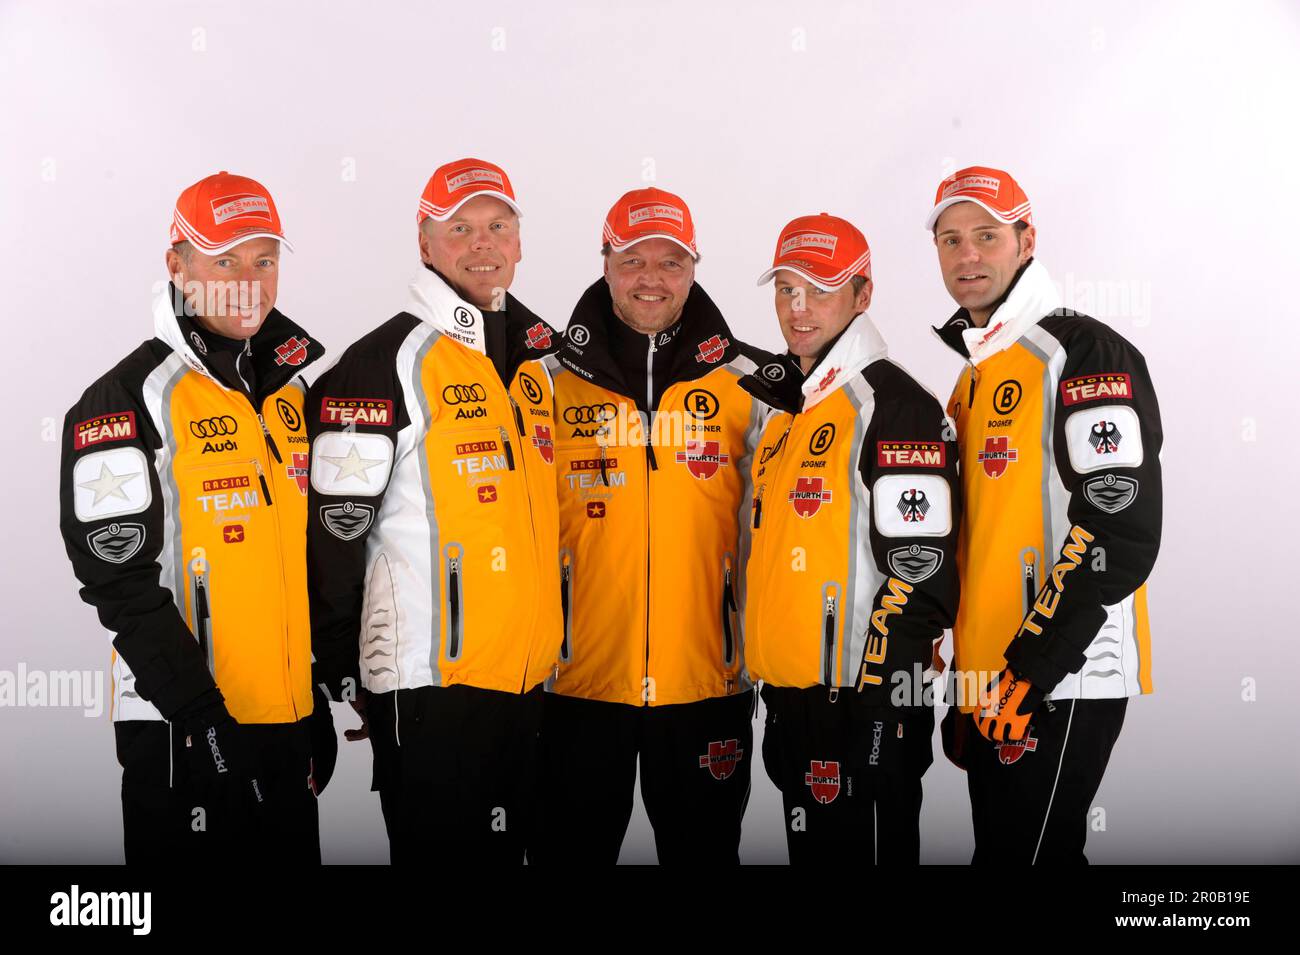 Cuno Schreyl, Ismo Hämälainen, Jochen Behle (Bundestriner) Janko Neuber, Andreas Schlütter (Trainerstab Langlauf ) von links, Teamfoto DSV Ski National Mannschaft, Porträt Stock Photo